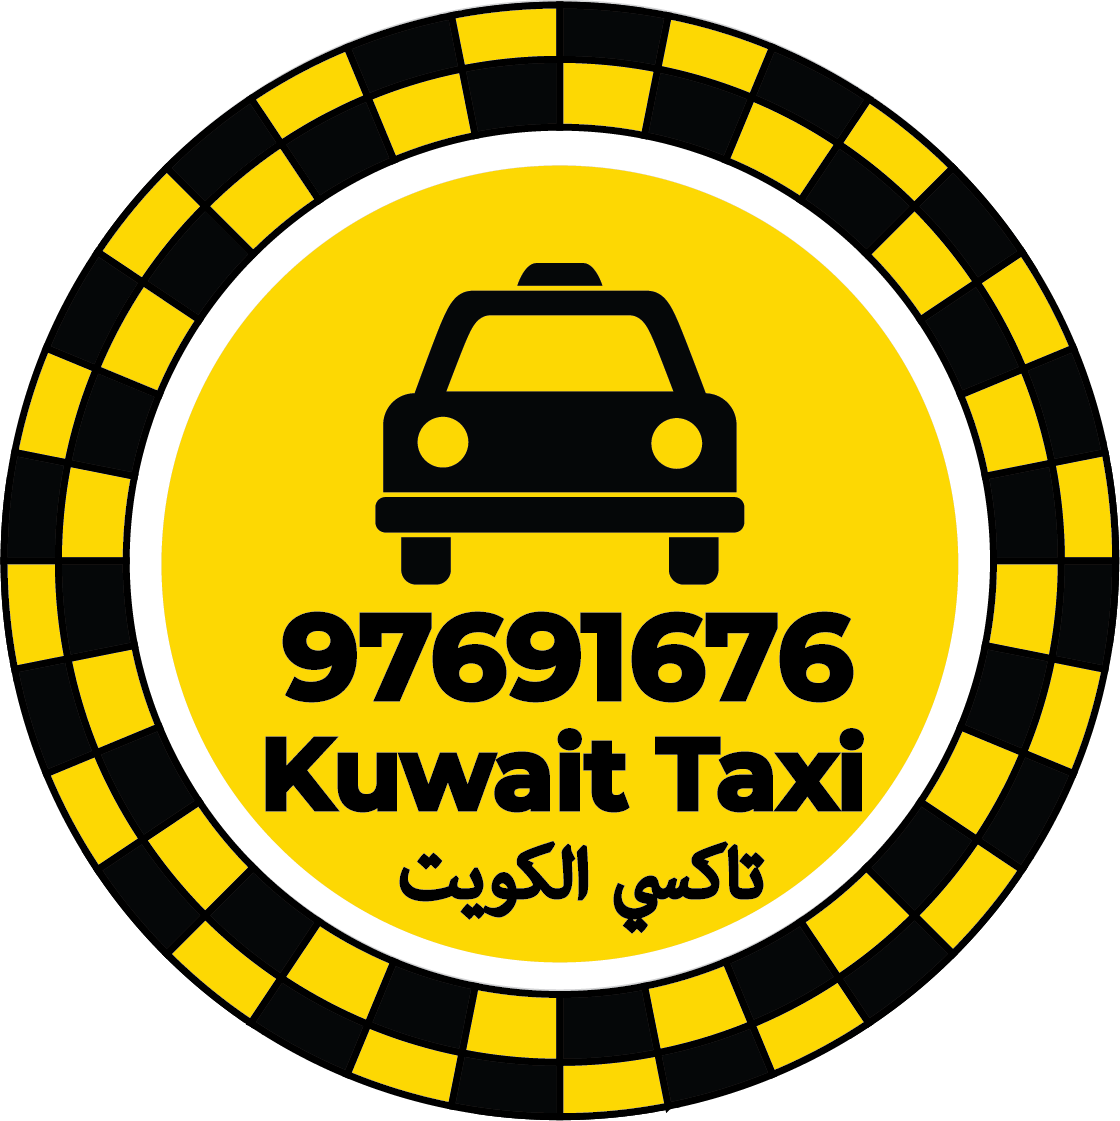 تاكسي المطار الكويت - تاكسي التوصيل لمطار الكويت